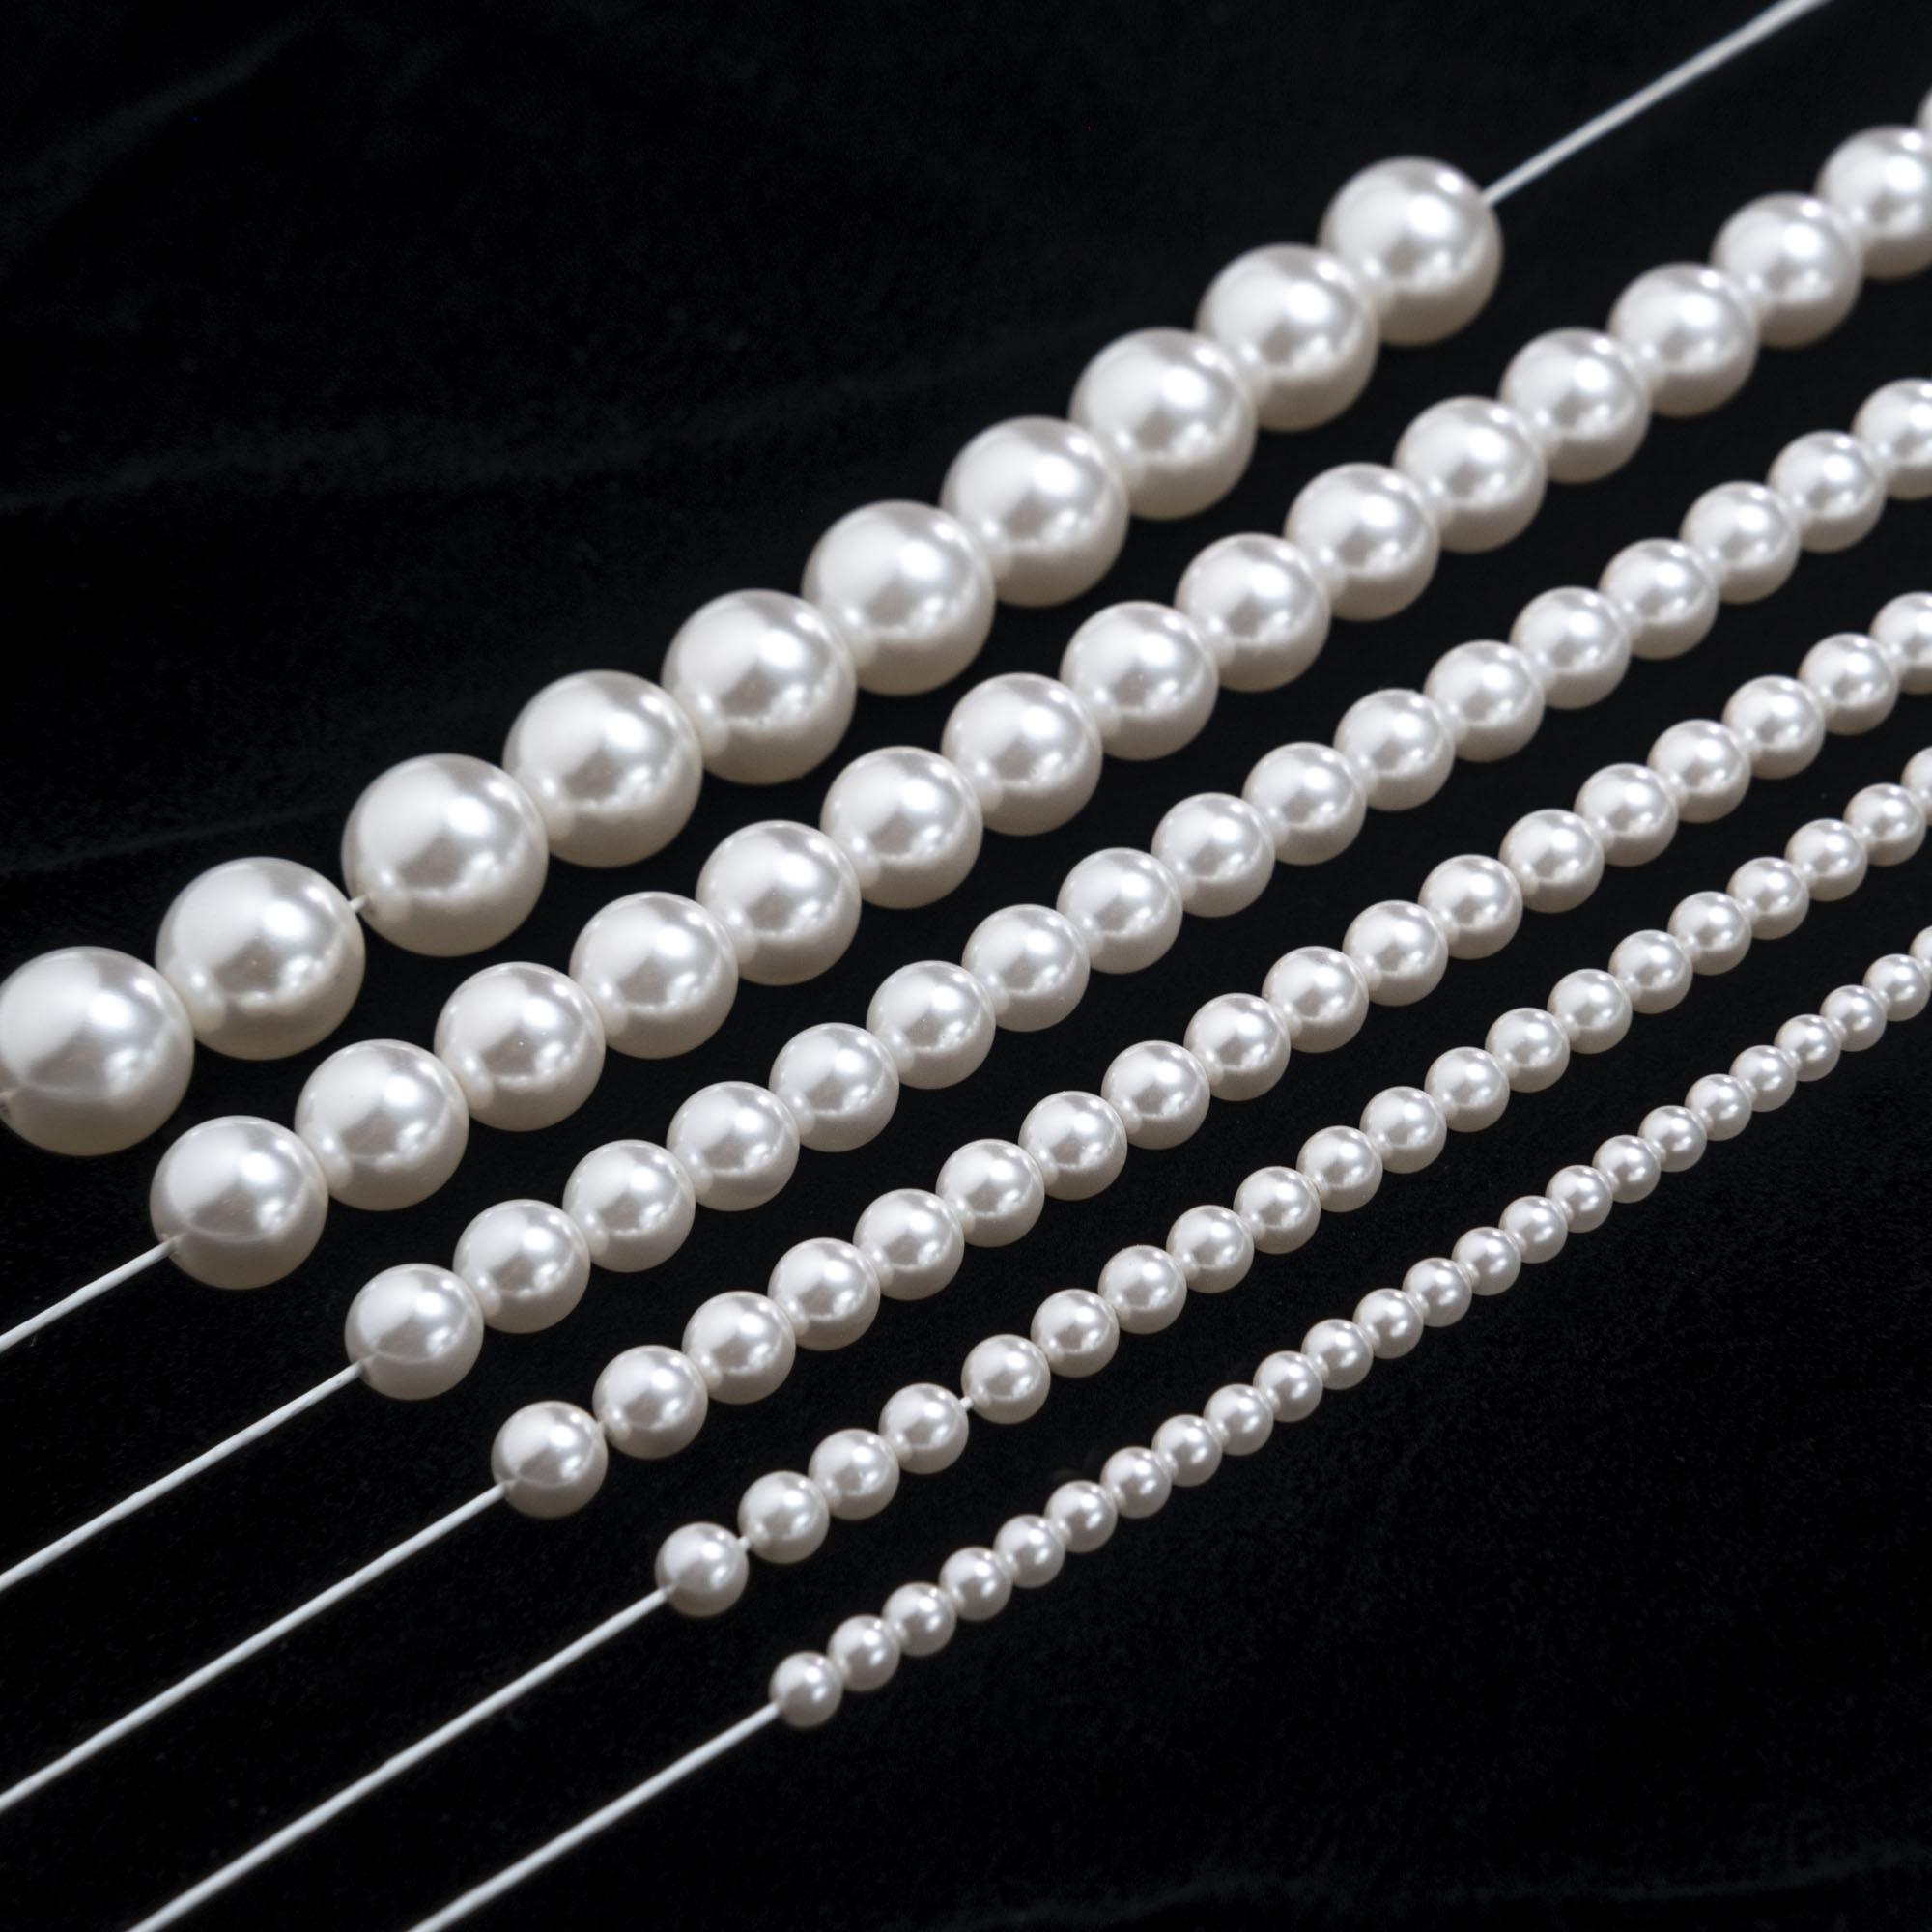 法式刺绣材料 人造水晶珍珠纯白色直孔3mm-10mm六种规格 美甲材料